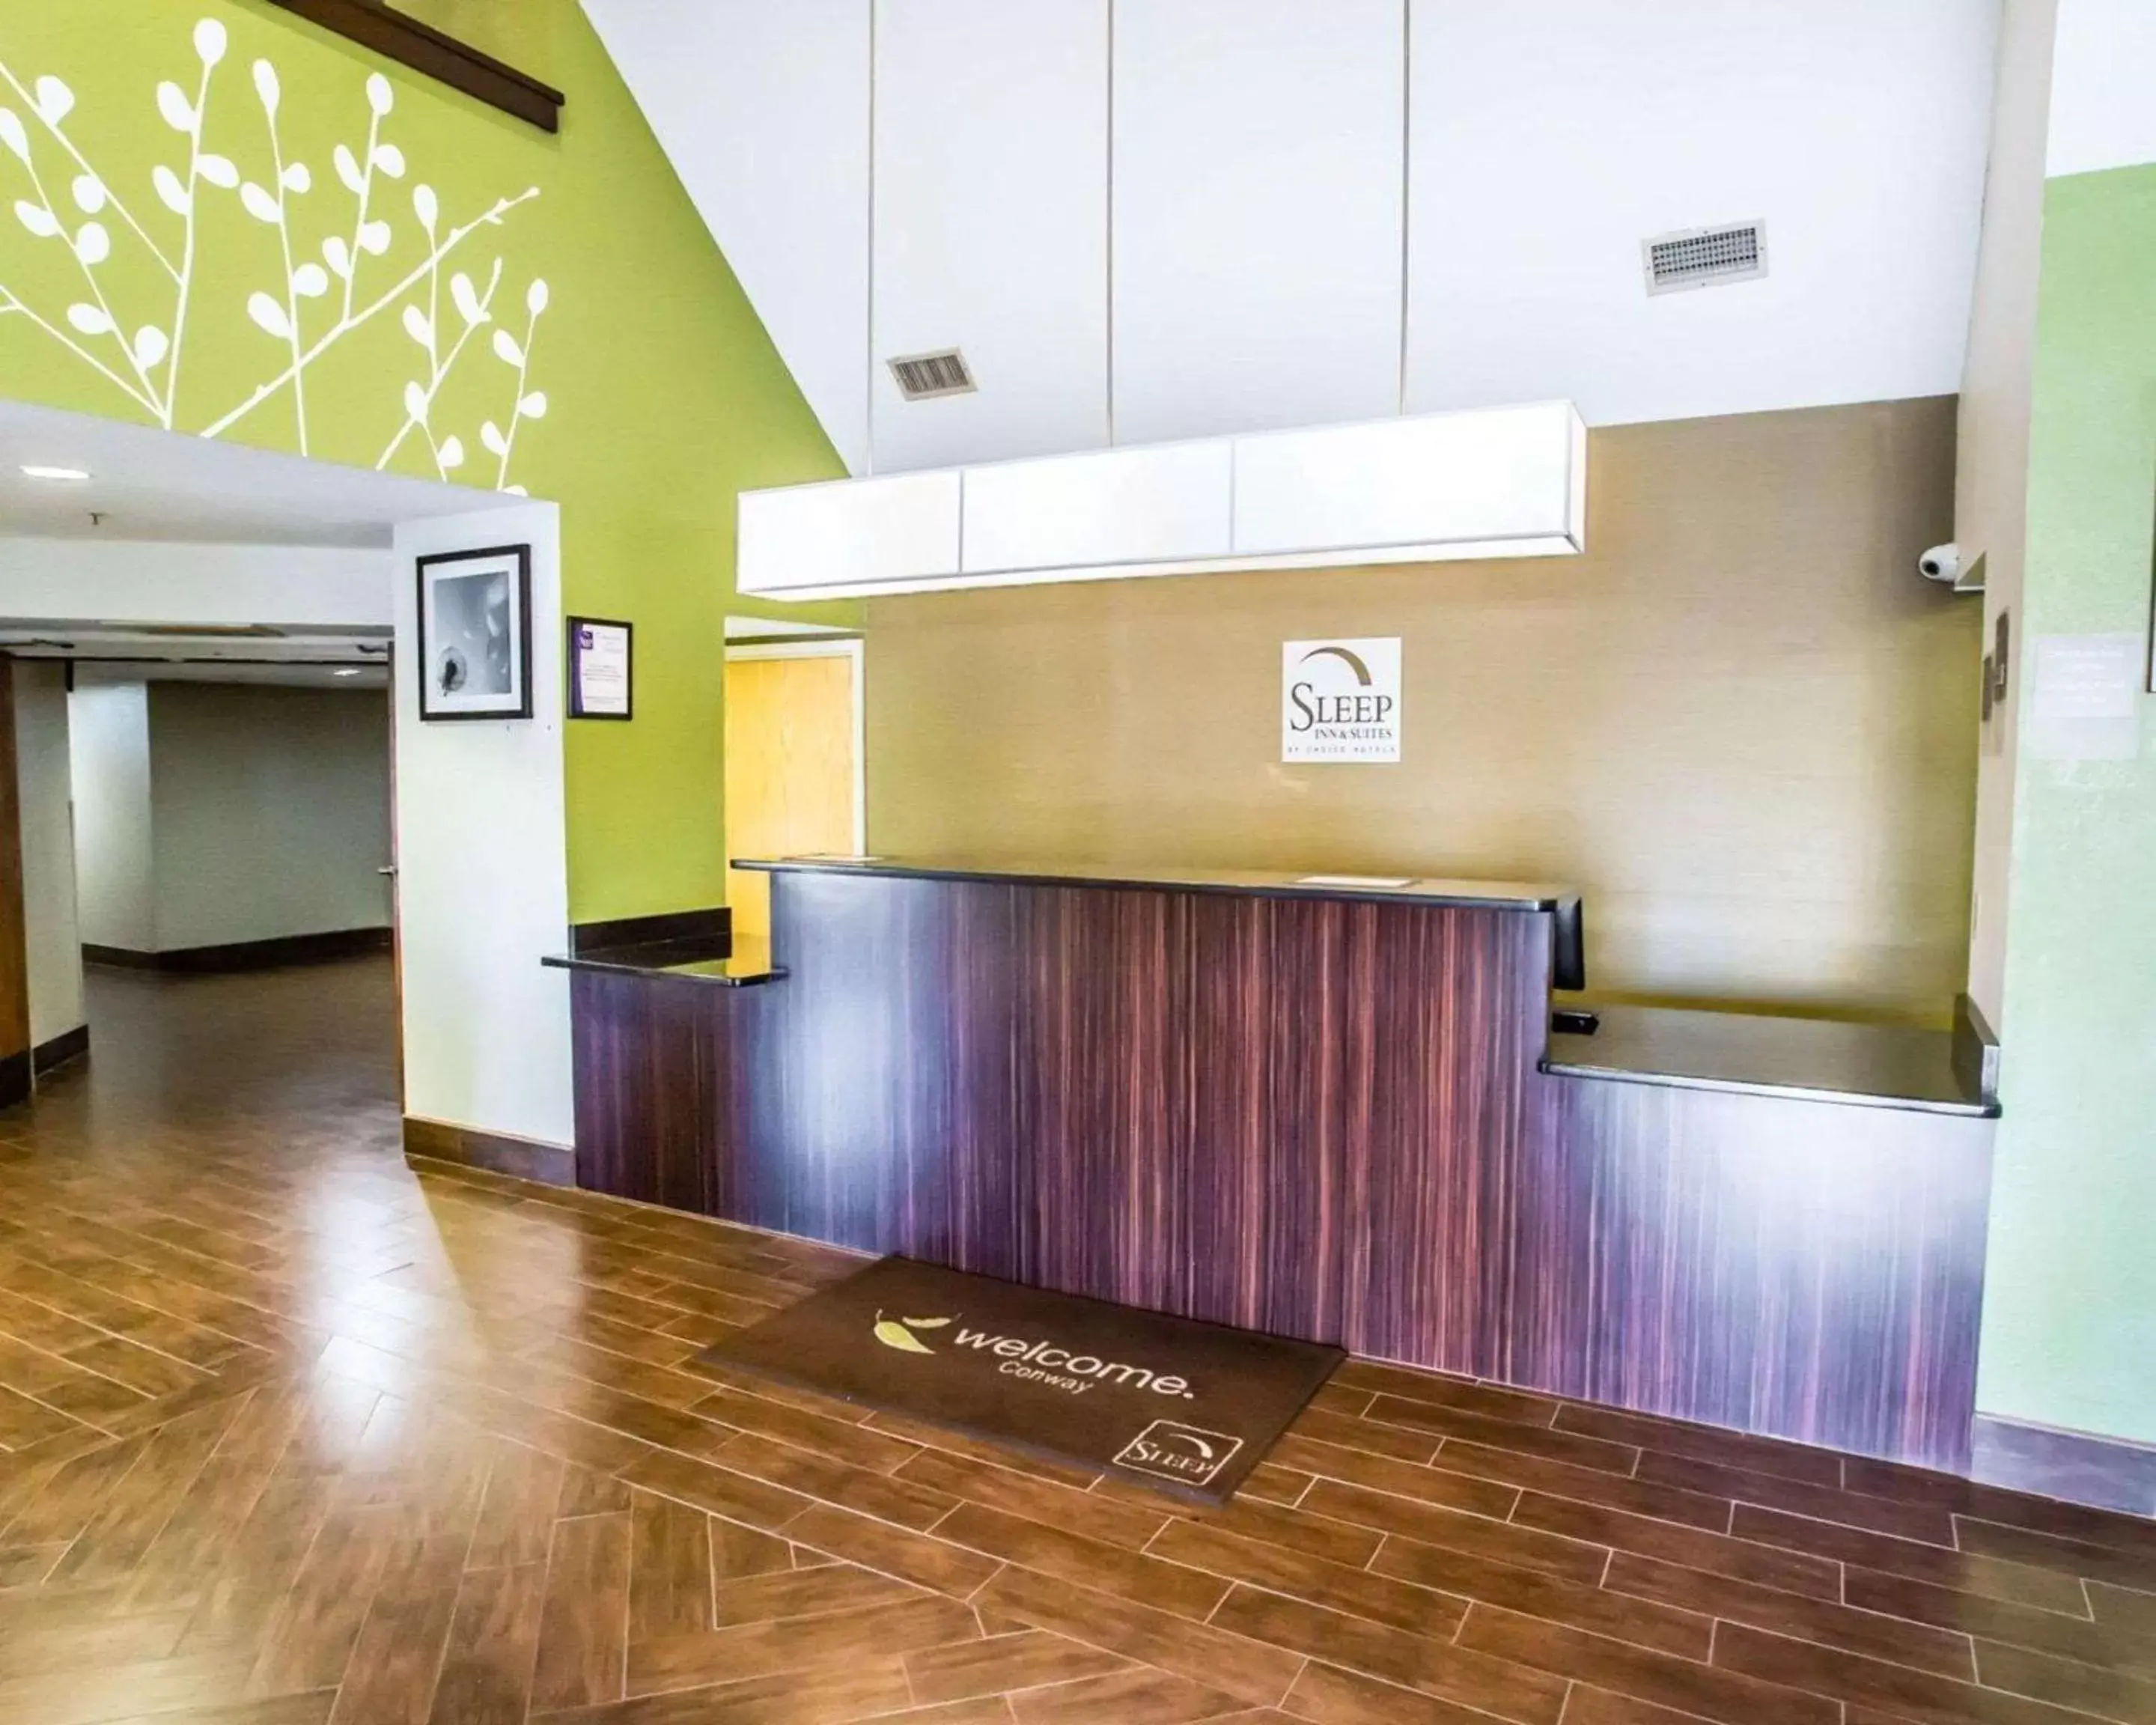 Lobby or reception, Lobby/Reception in Sleep Inn near Outlets